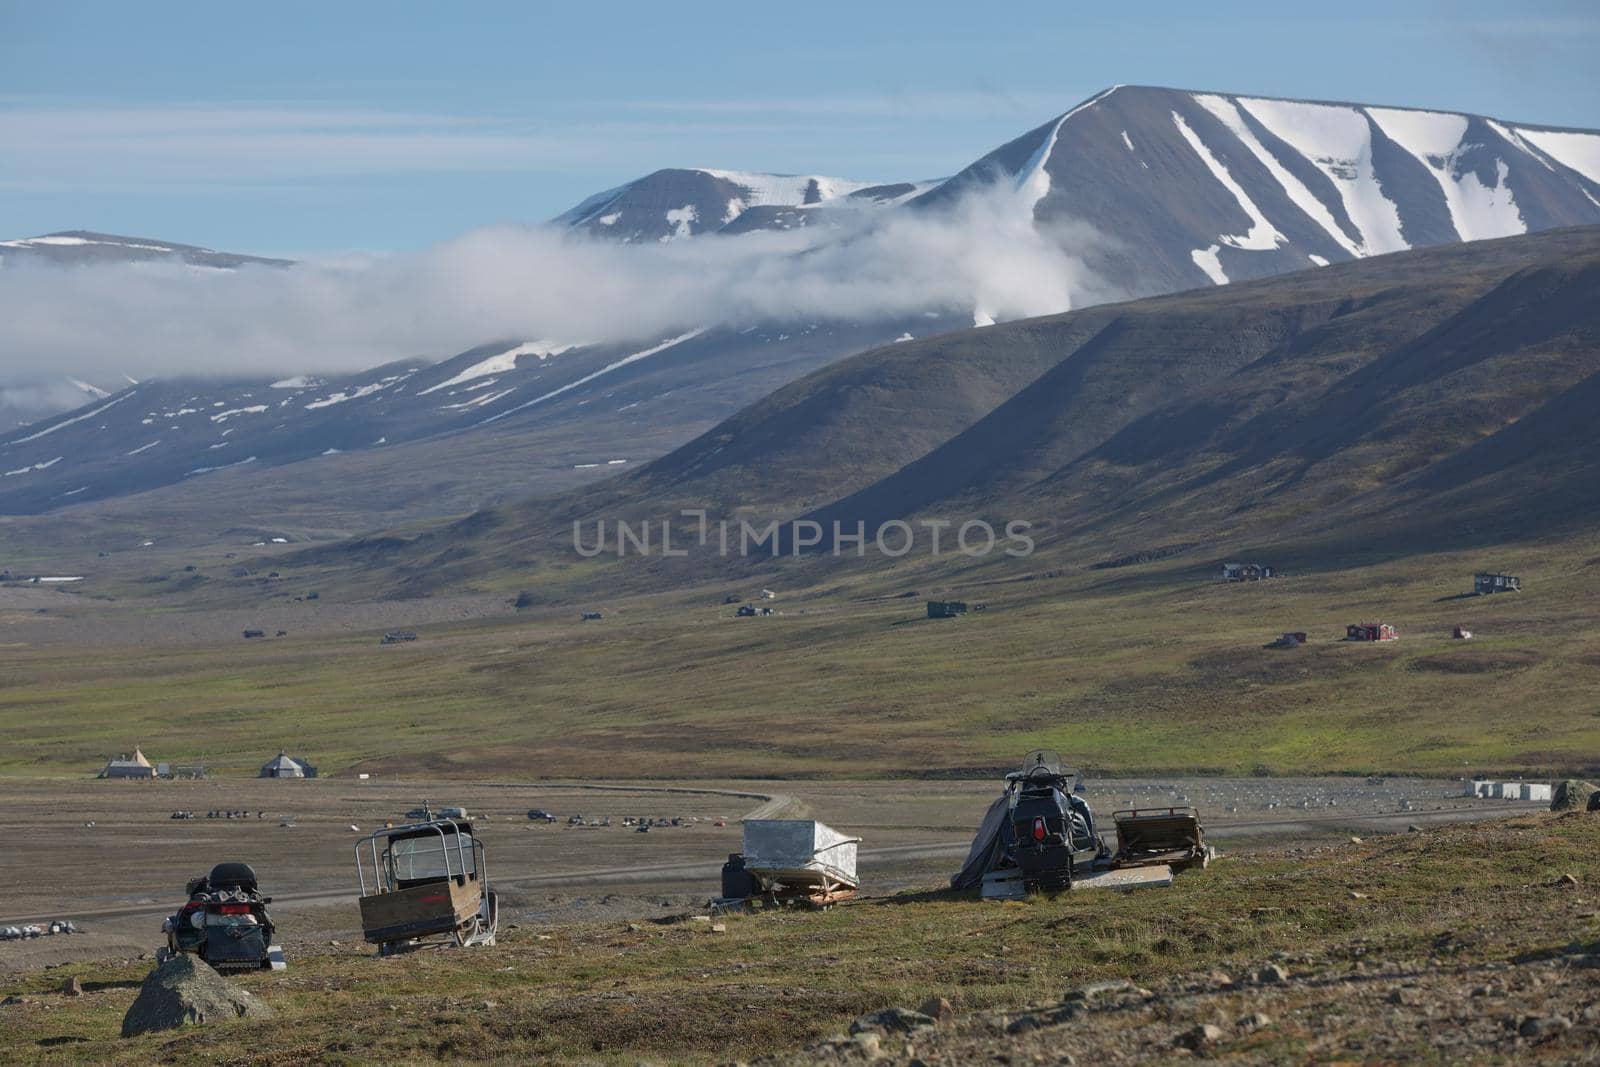 Beautiful nature and landscape near Longyearbyen, Spitsbergen  in Norway.